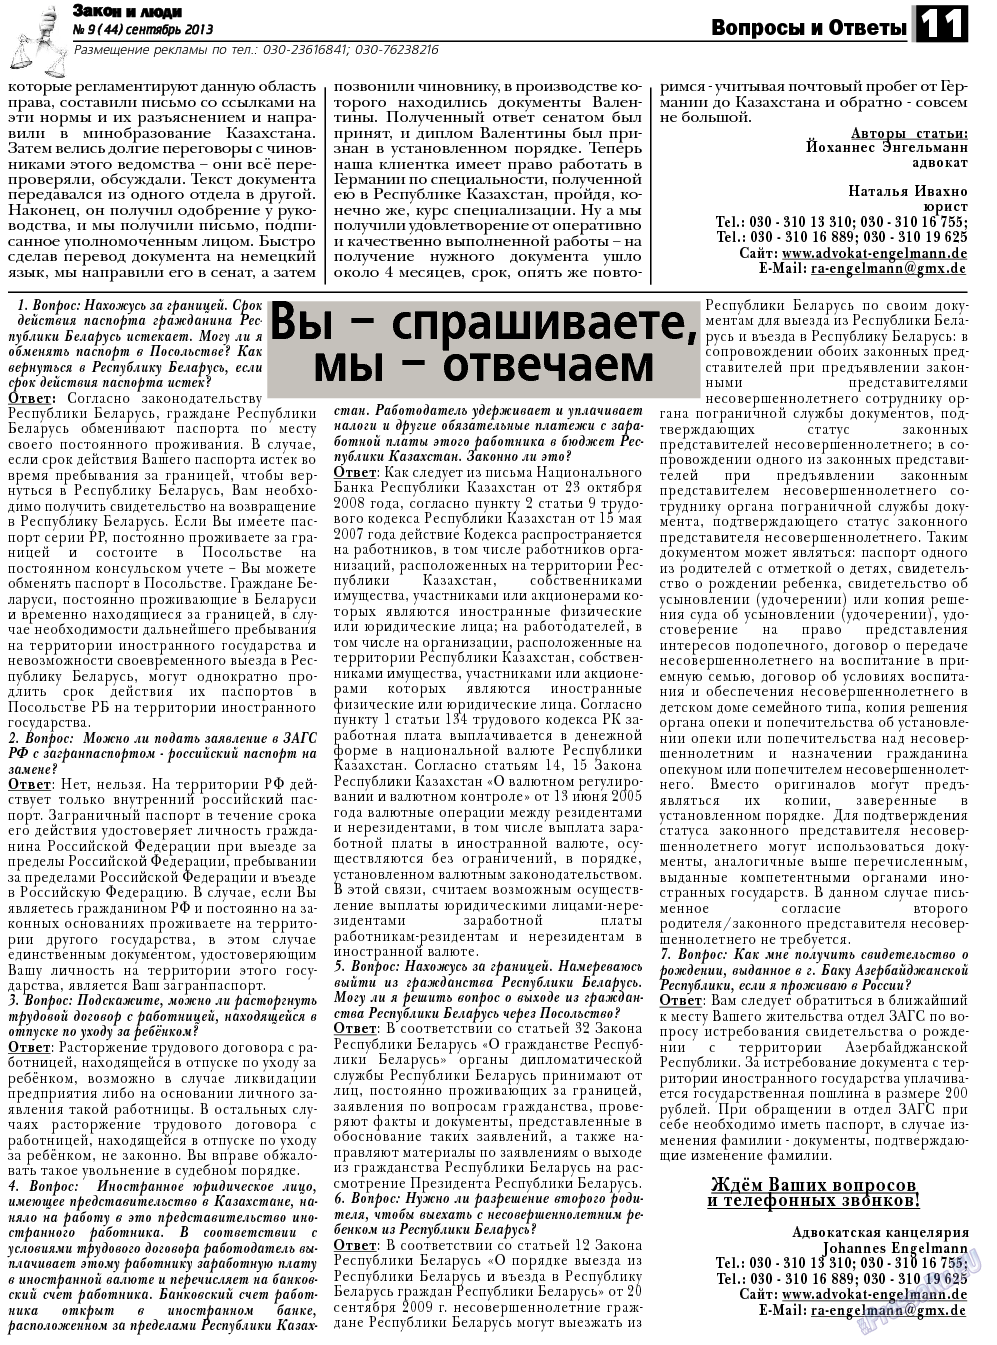 Закон и люди, газета. 2013 №9 стр.11